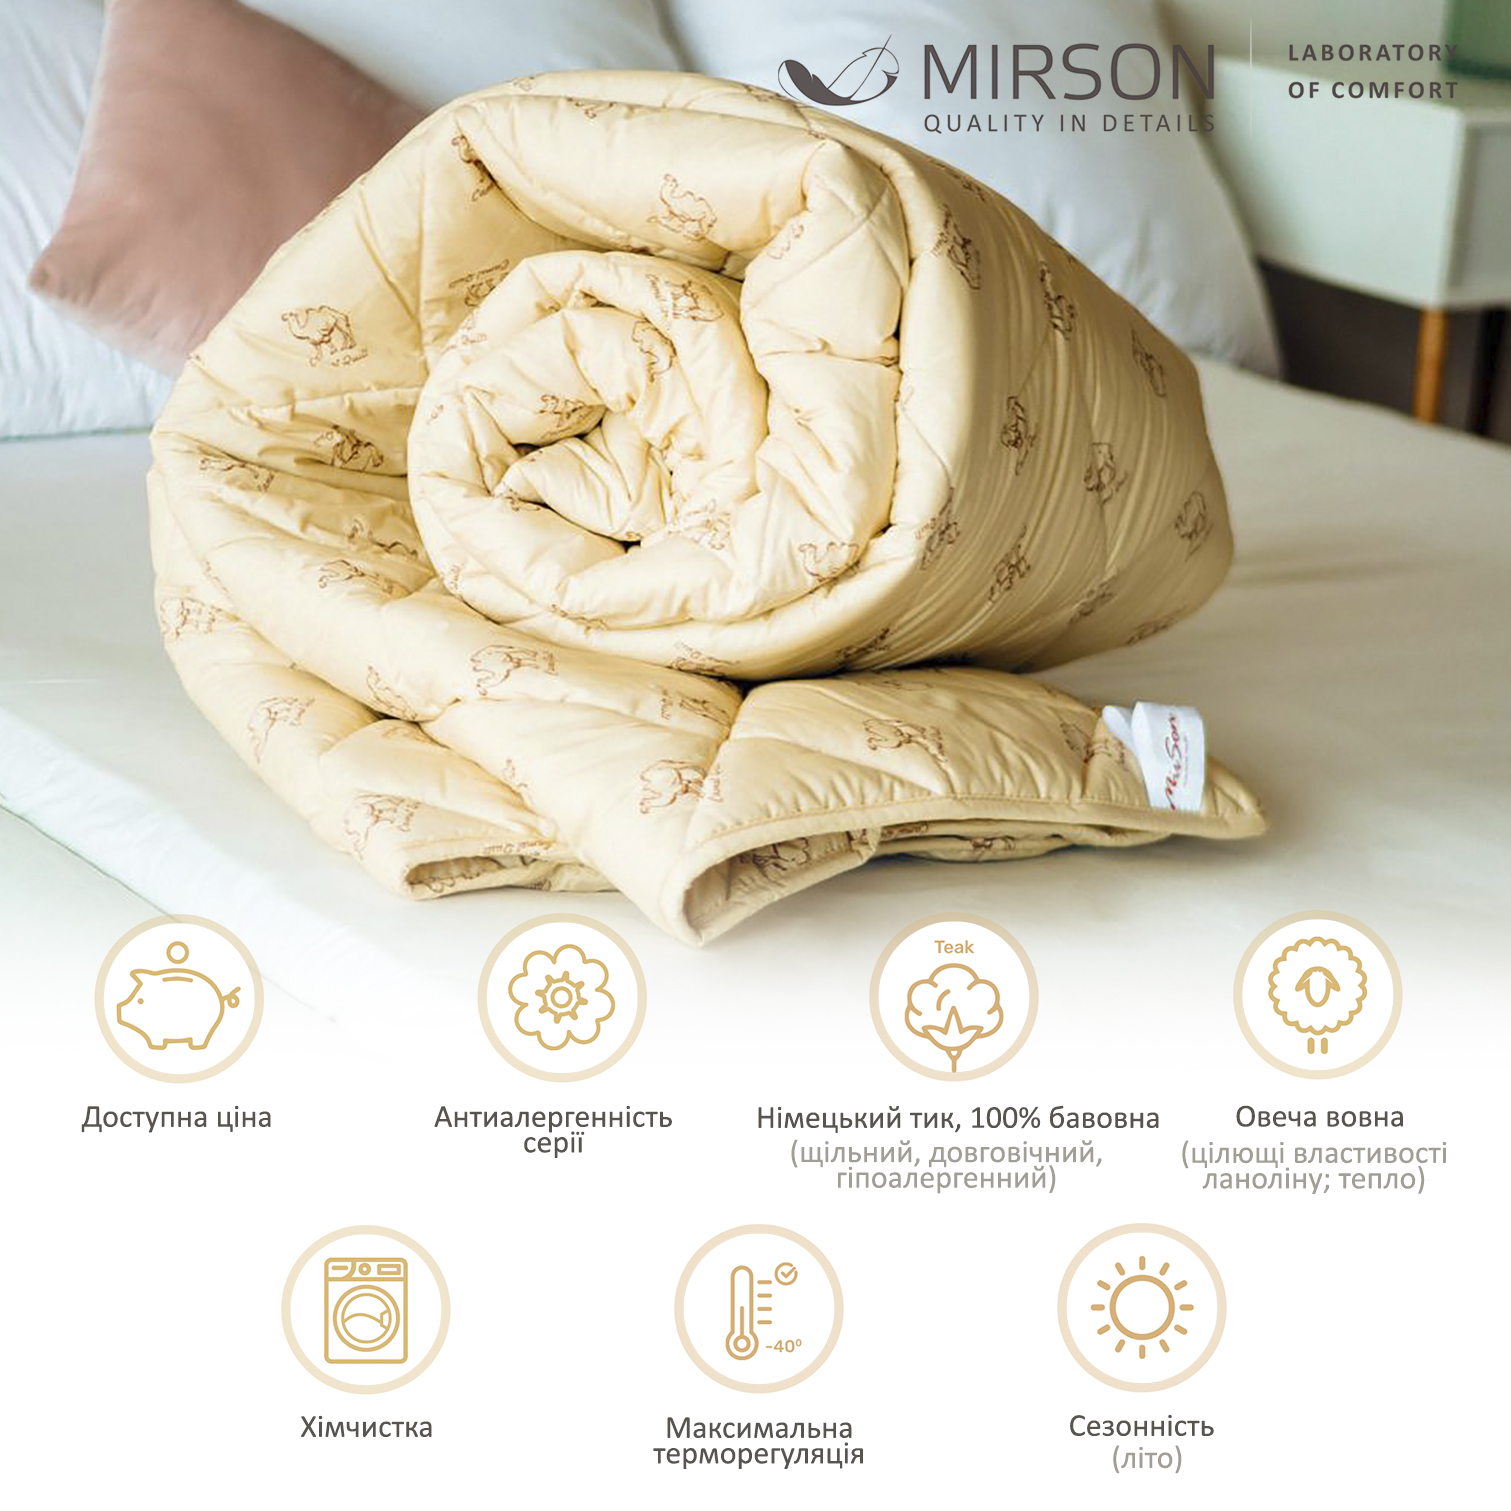 Одеяло шерстяное MirSon Gold Camel №022, летнее, 200x220 см, кремовое - фото 5